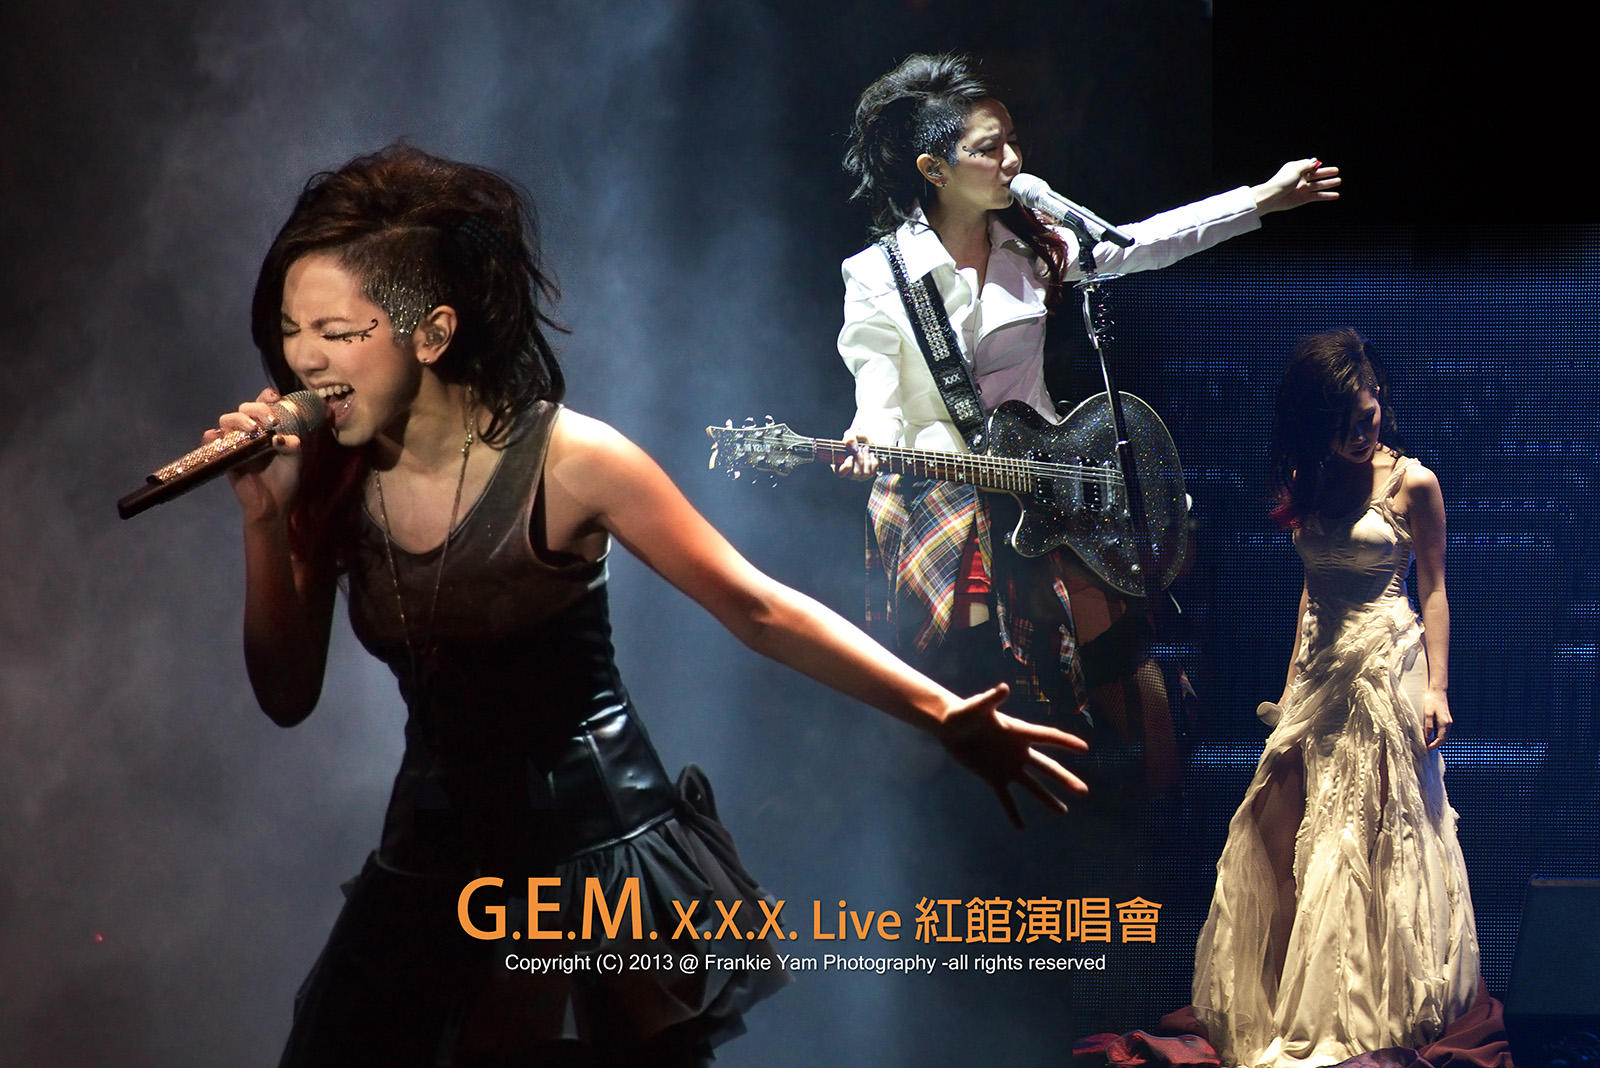 G.E.M.XXX Live 紅館演唱會